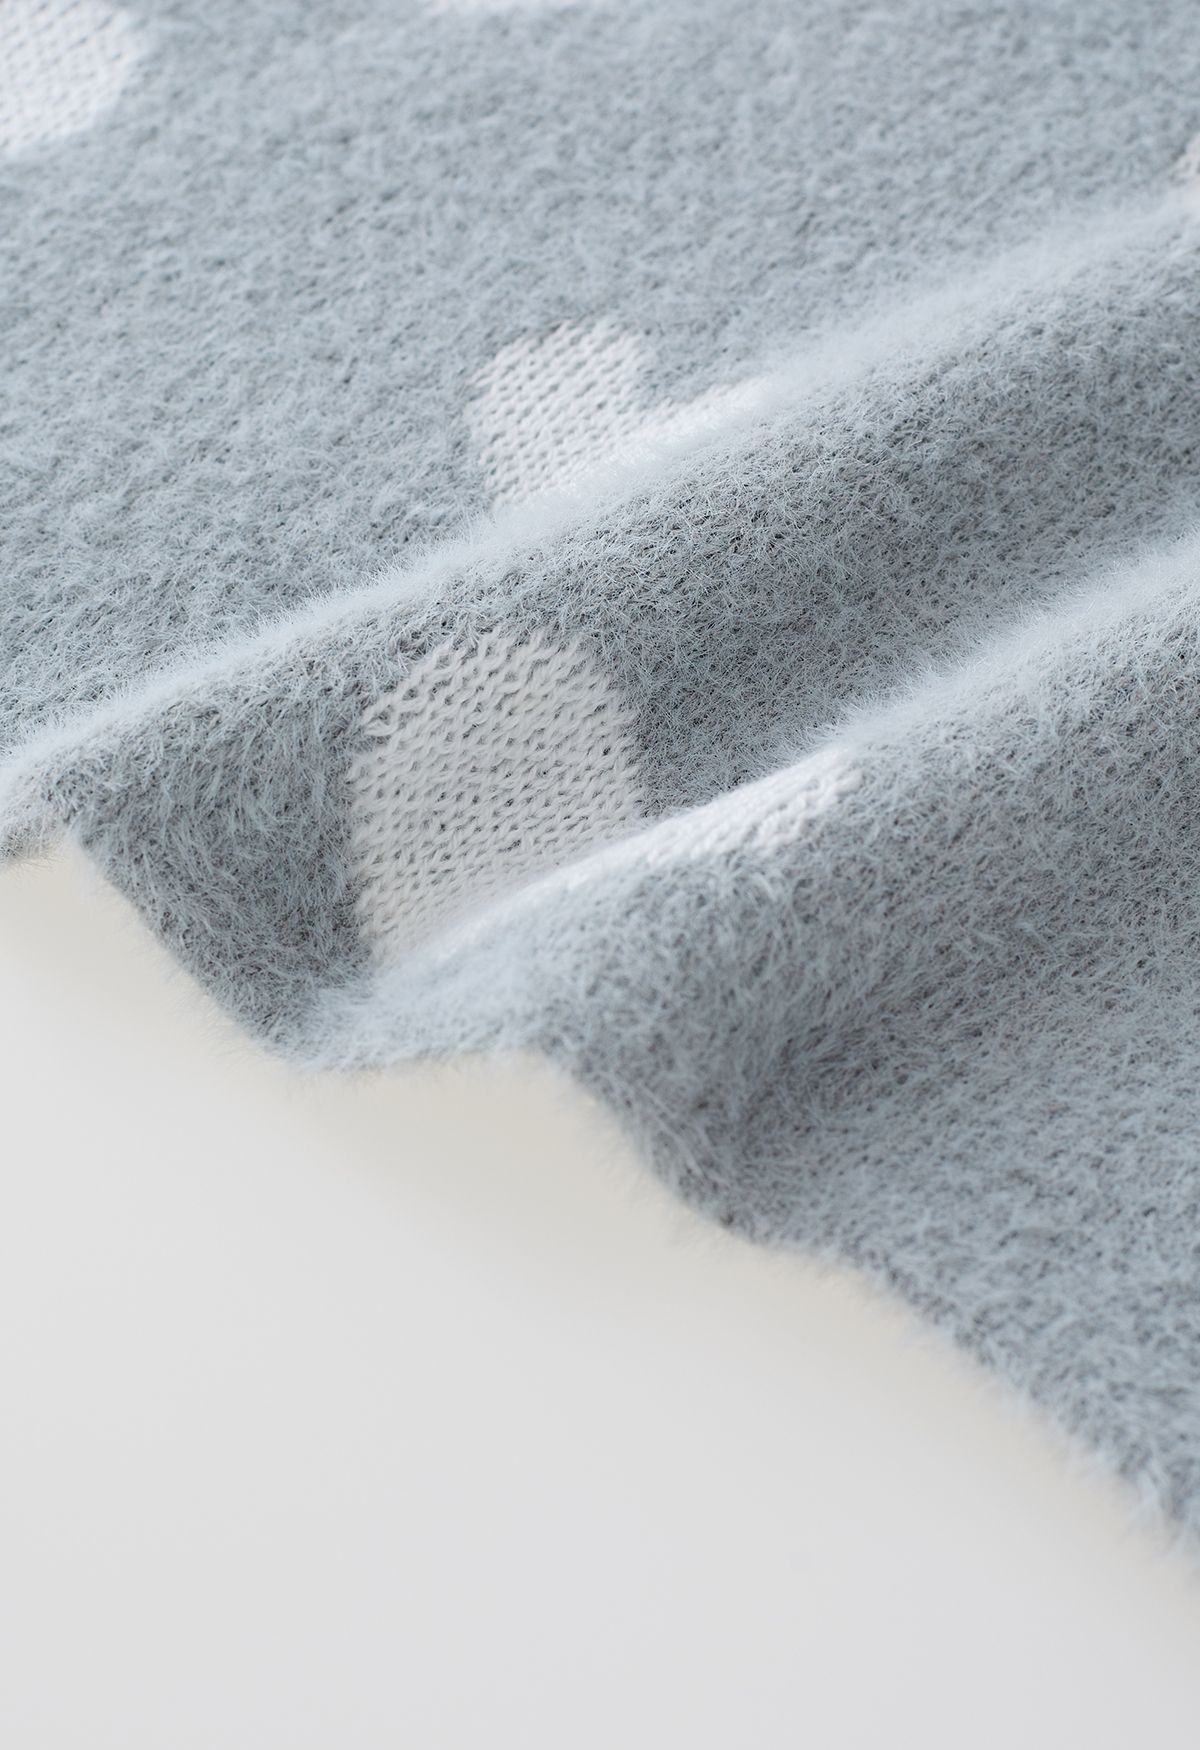 Fuzzy Contrast Heart Knit Sweater in Grey